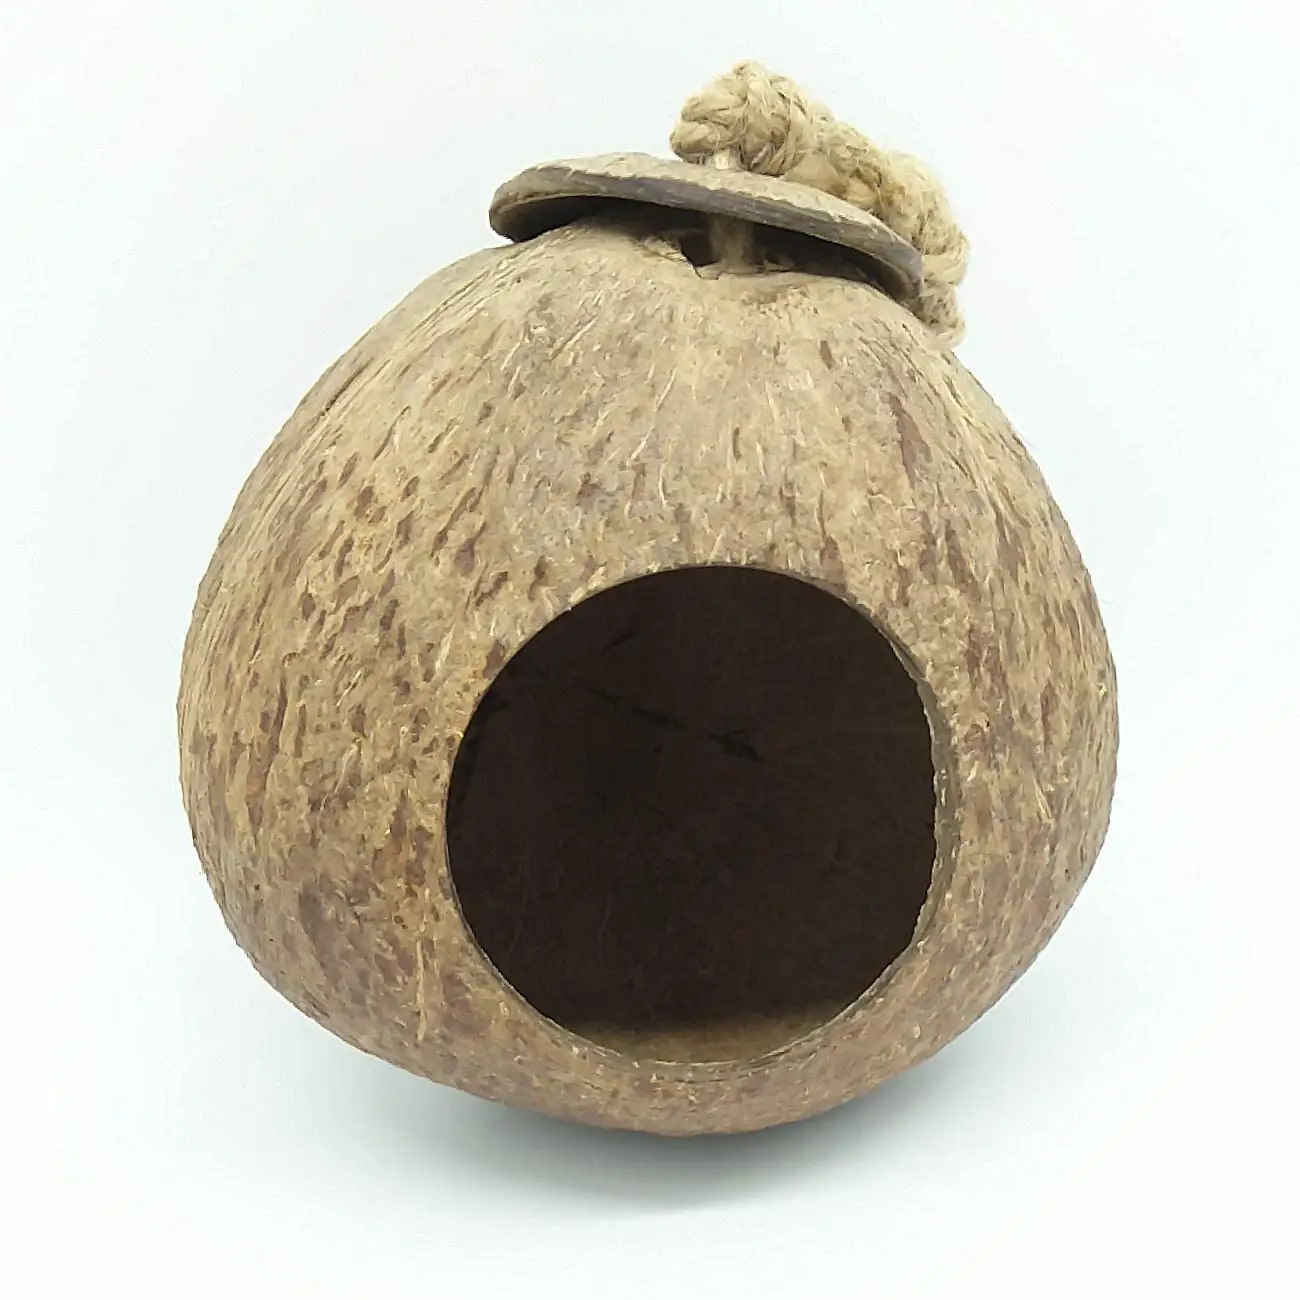 코코넛 버드 둥지 오두막 사다리 안전 숨기기 집 새 작은 동물 집 애완 동물 케이지